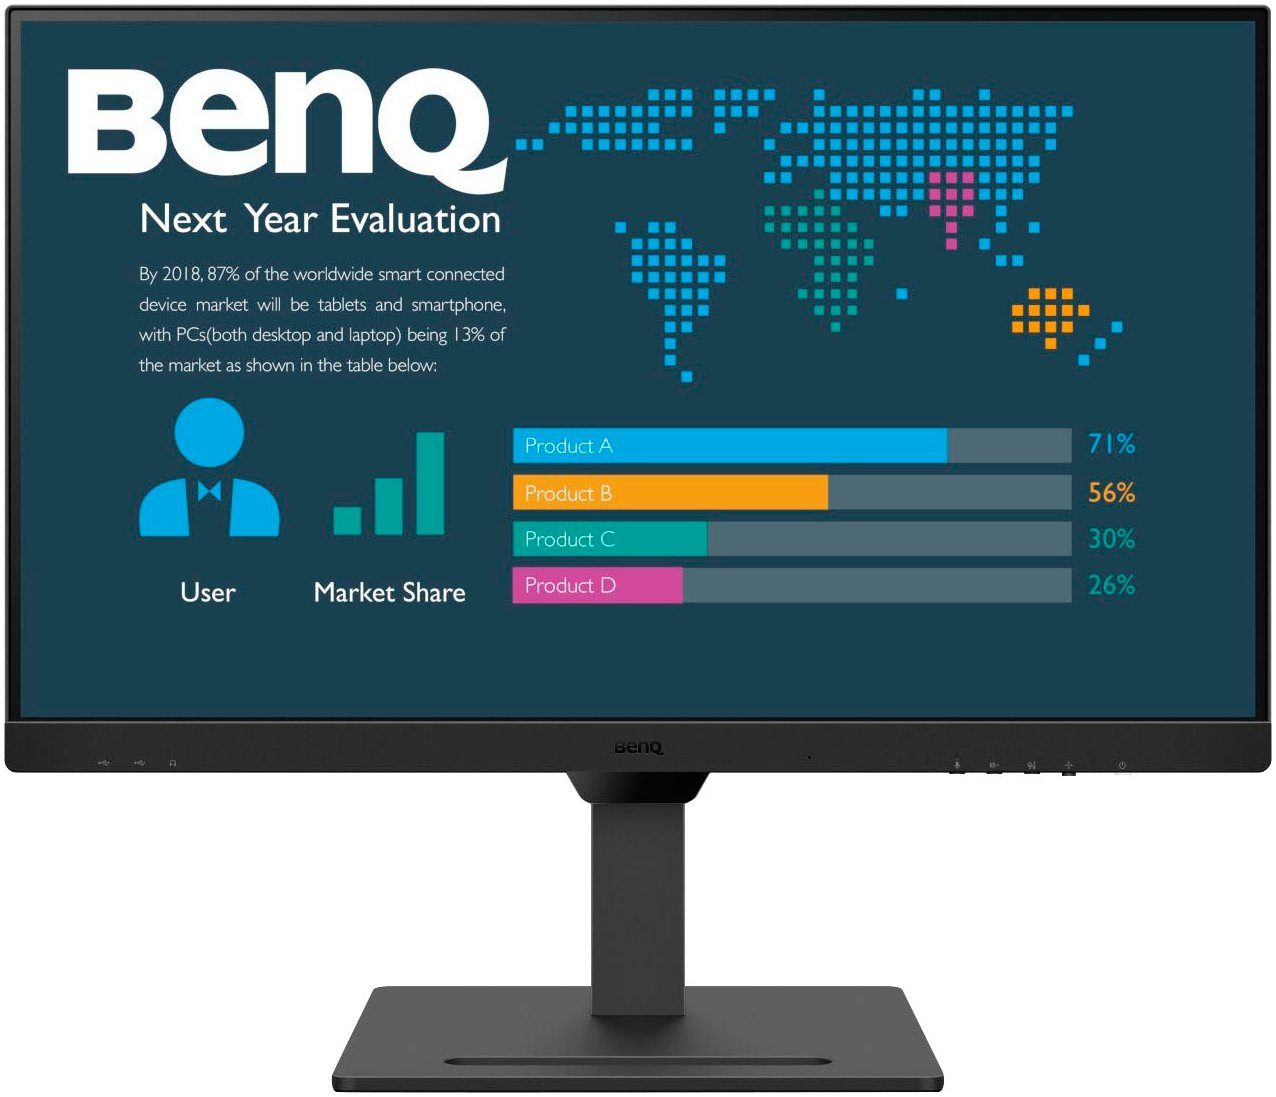 BenQ BL2790QT LED-Monitor (68,6 cm/27)